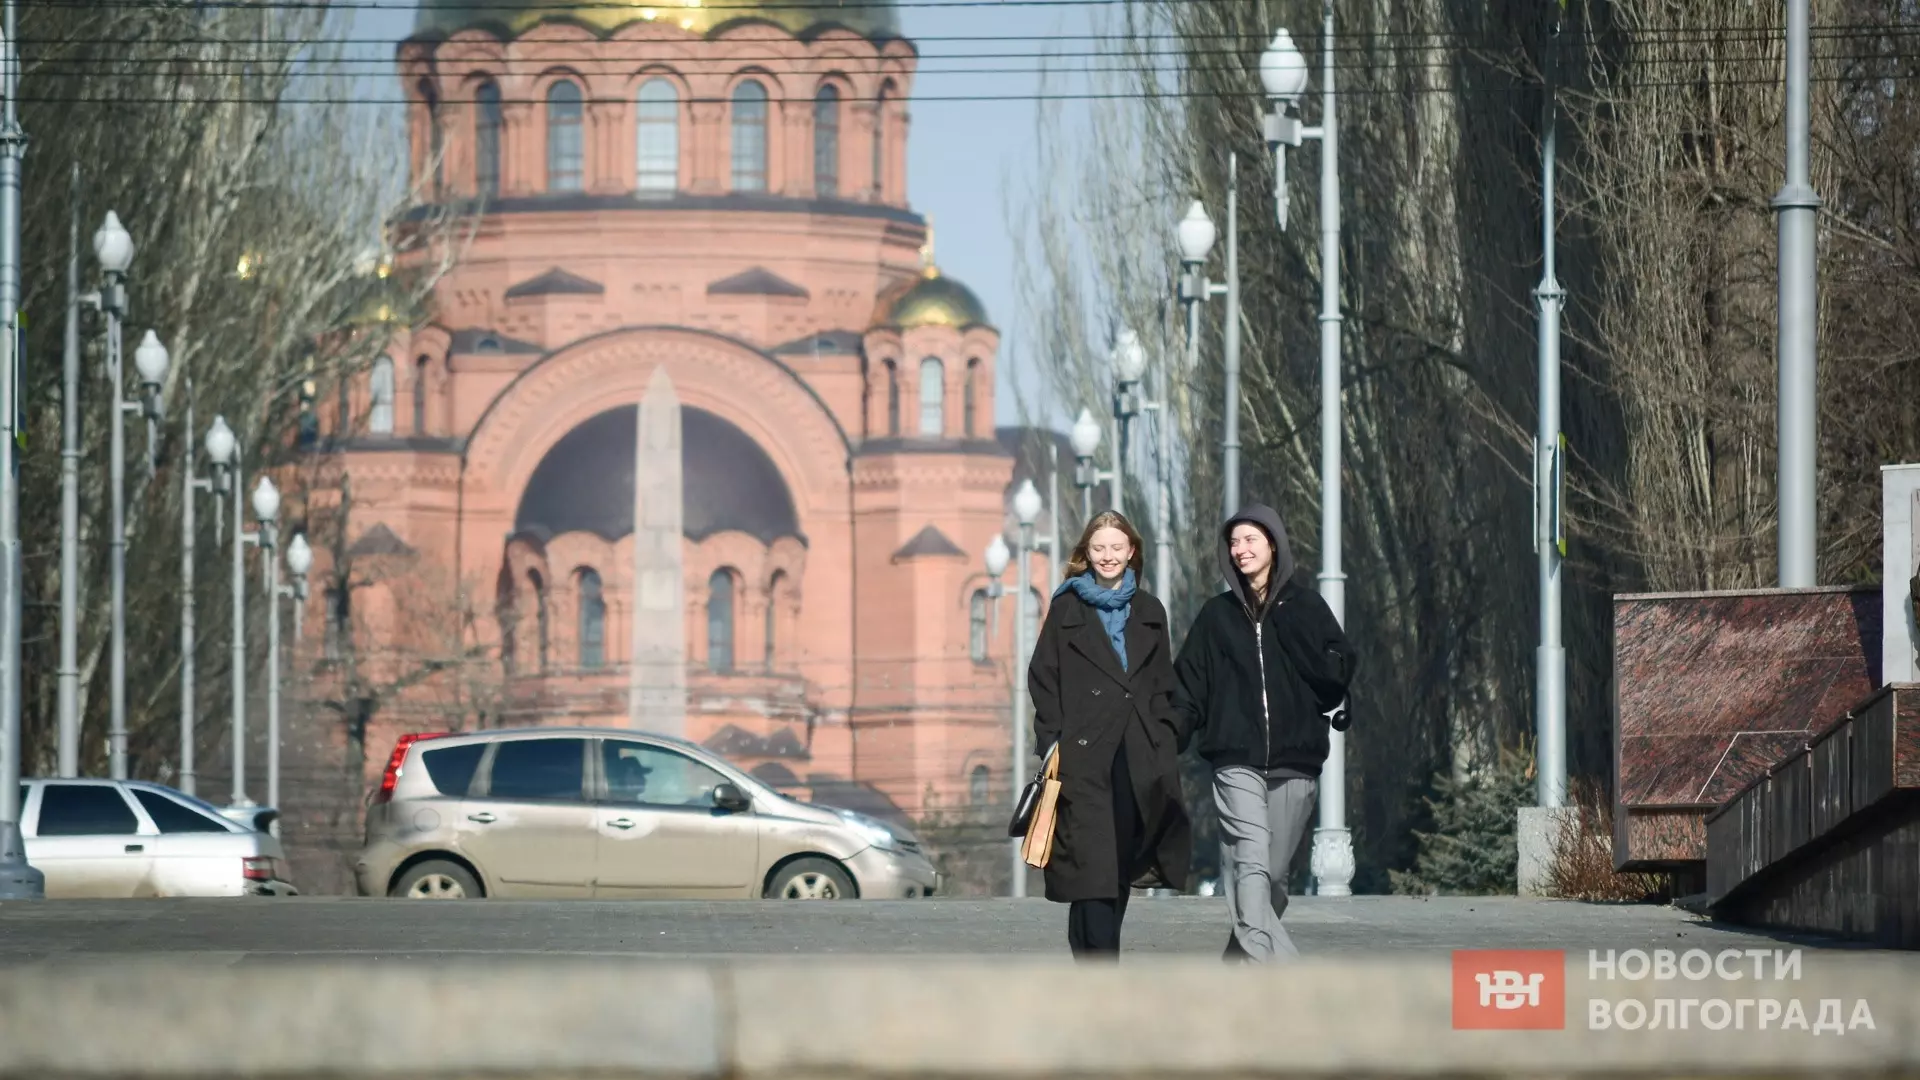 Фоторепортаж, заряженный на тепло: как Волгоград встречает весну